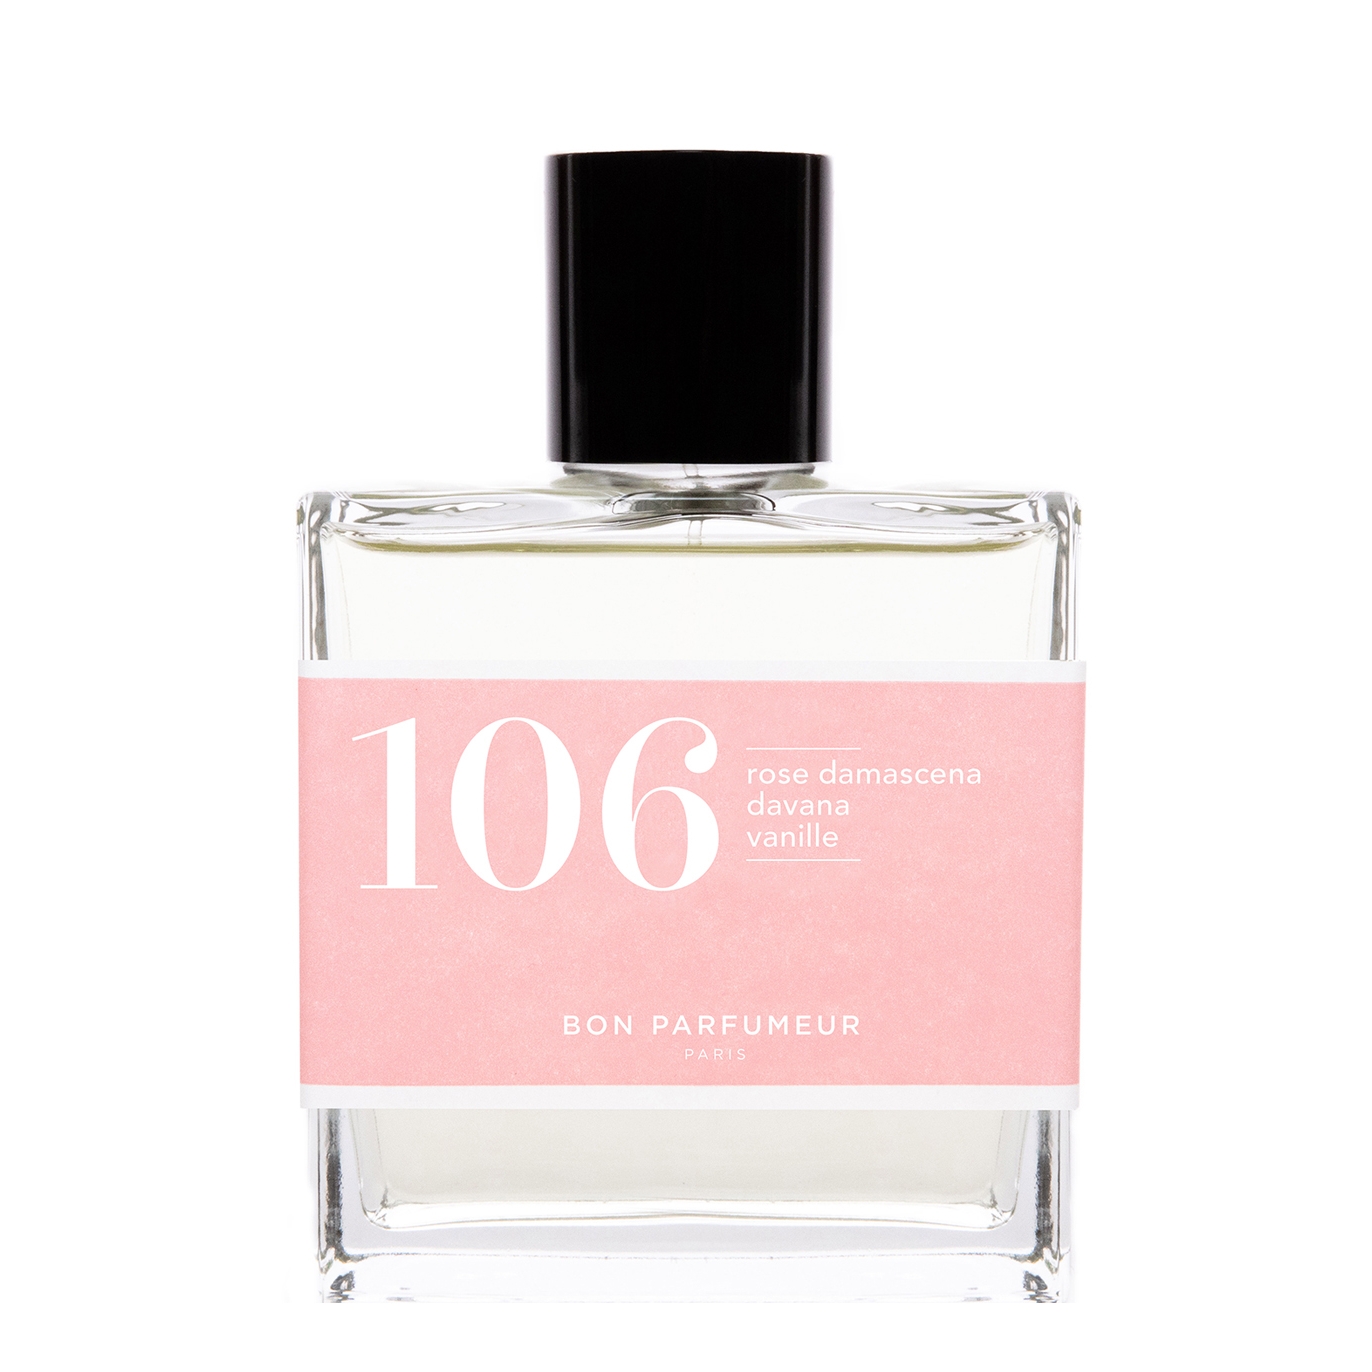 Bon Parfumeur 106 Damascena Rose, Davana, Vanilla Eau De Parfum 100ml